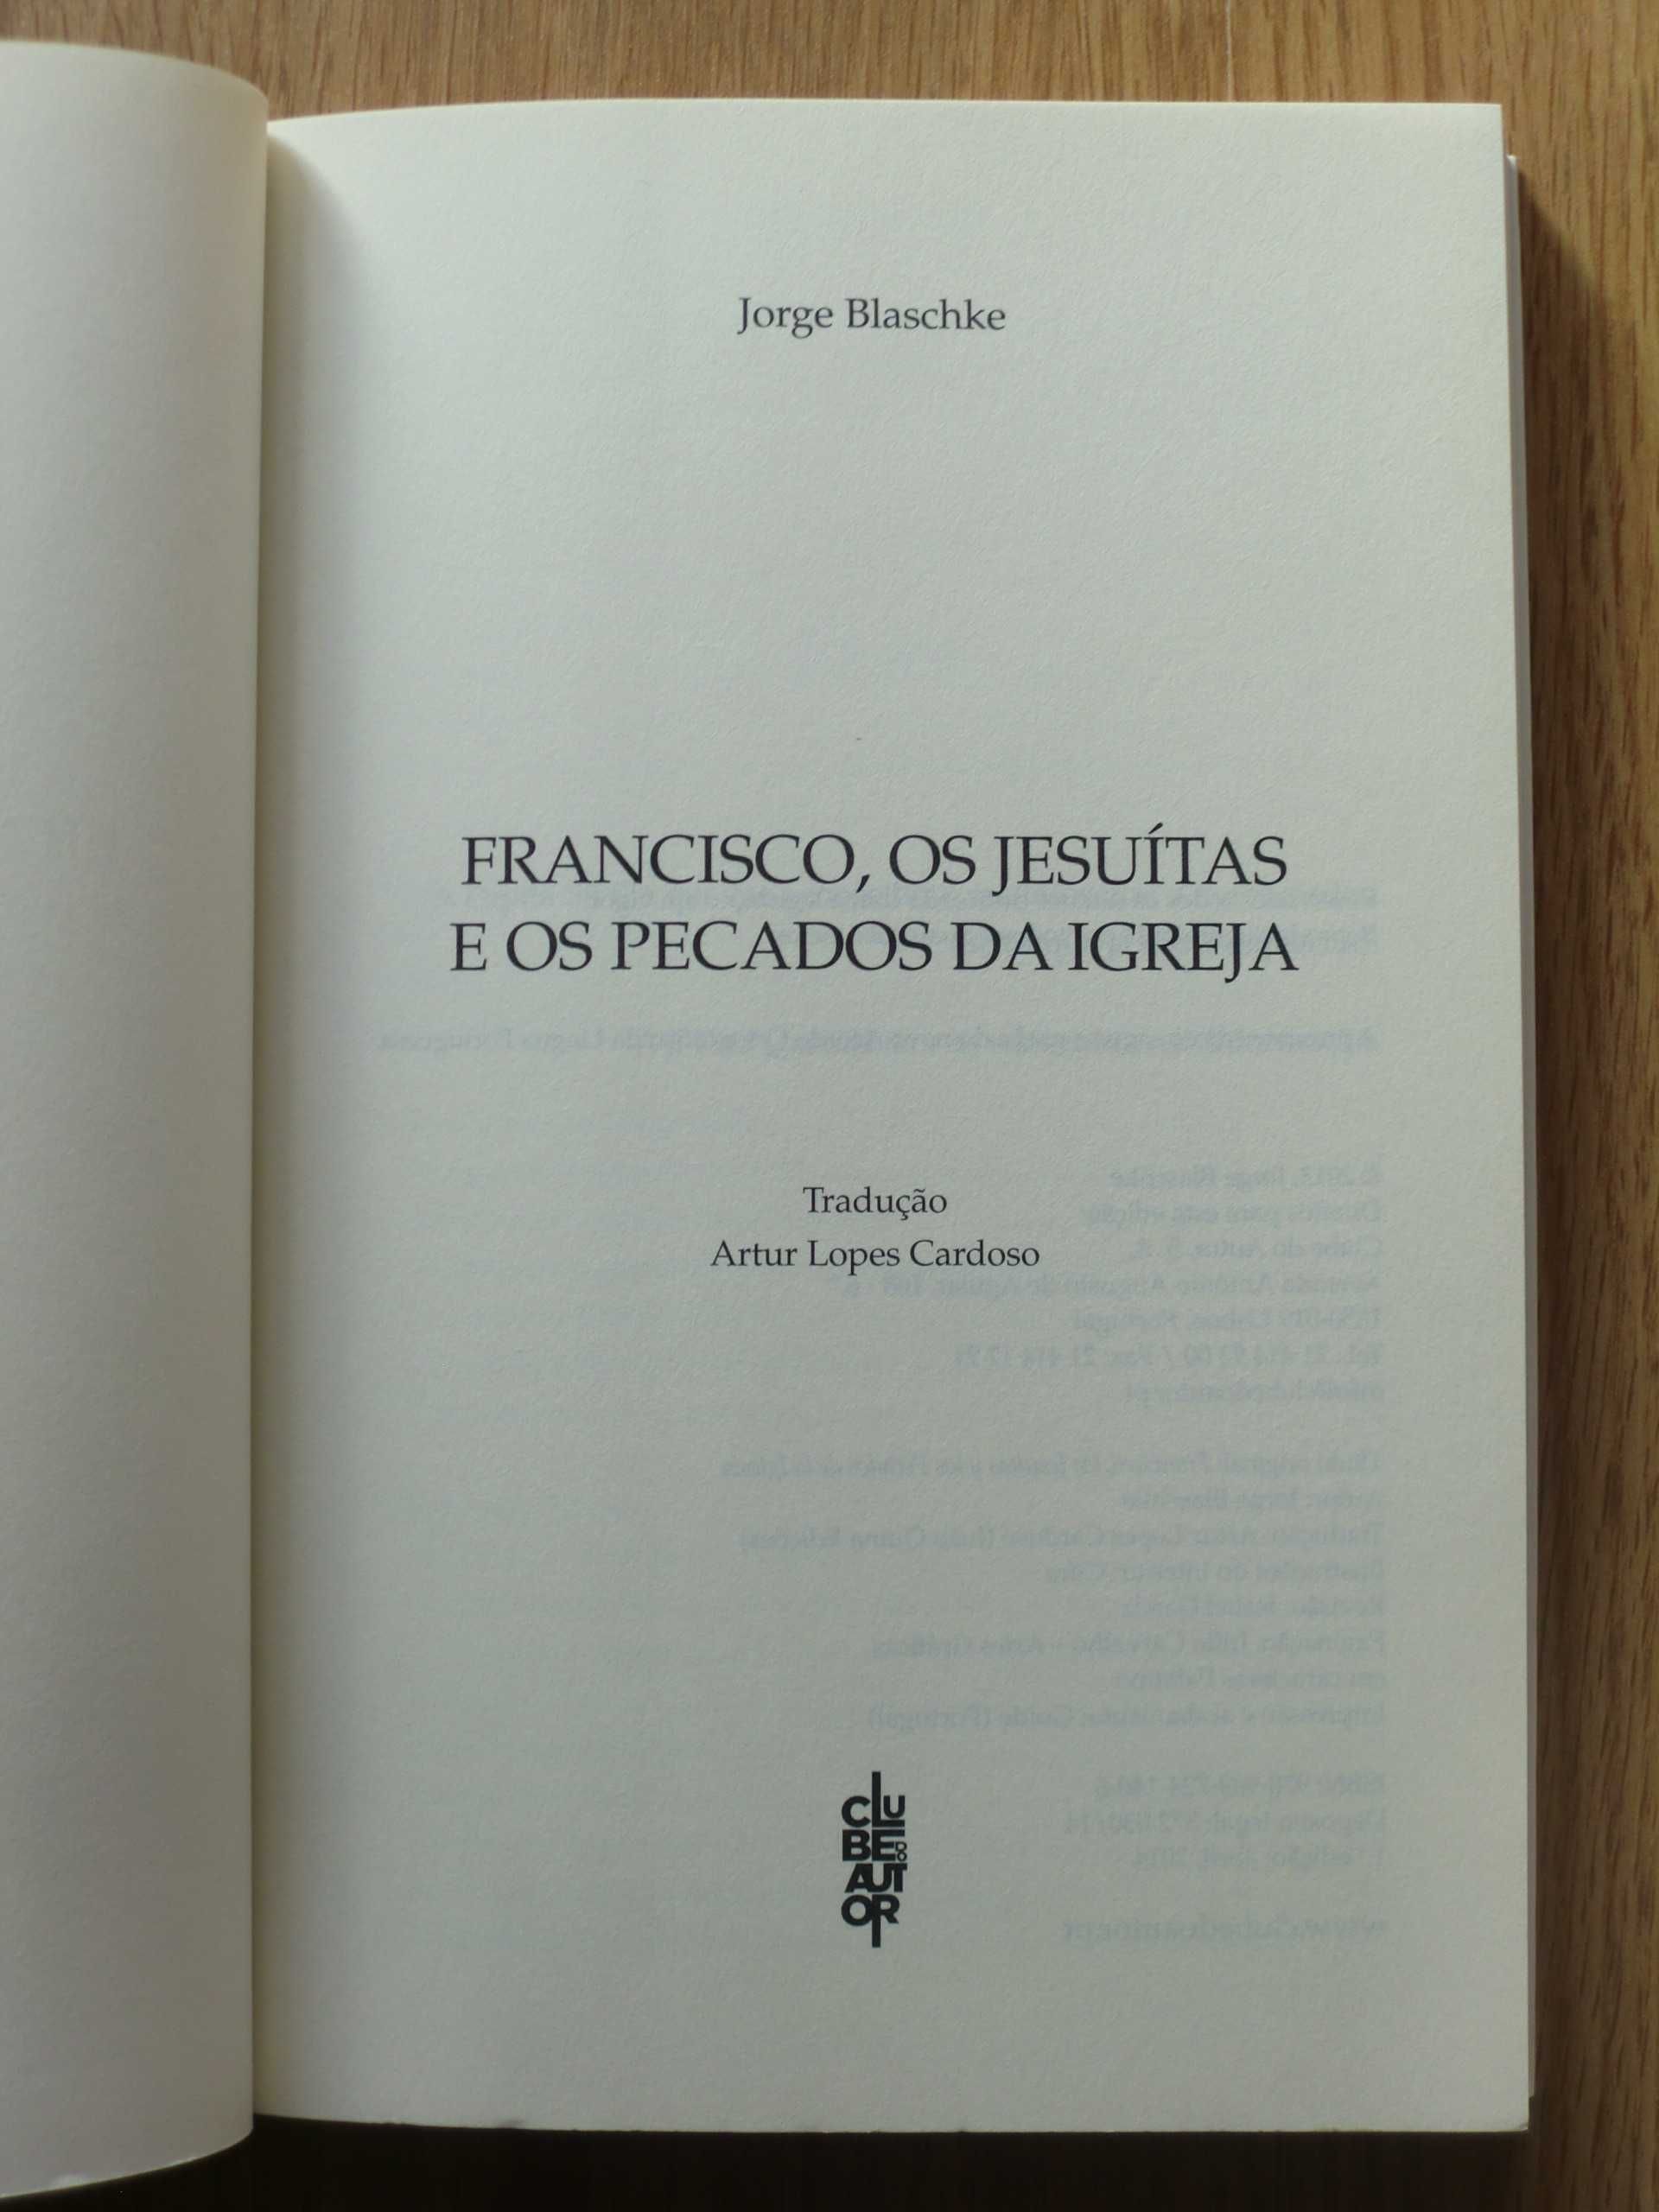 Francisco, os Jesuítas e os pecados da Igreja
de Jorge Blaschke